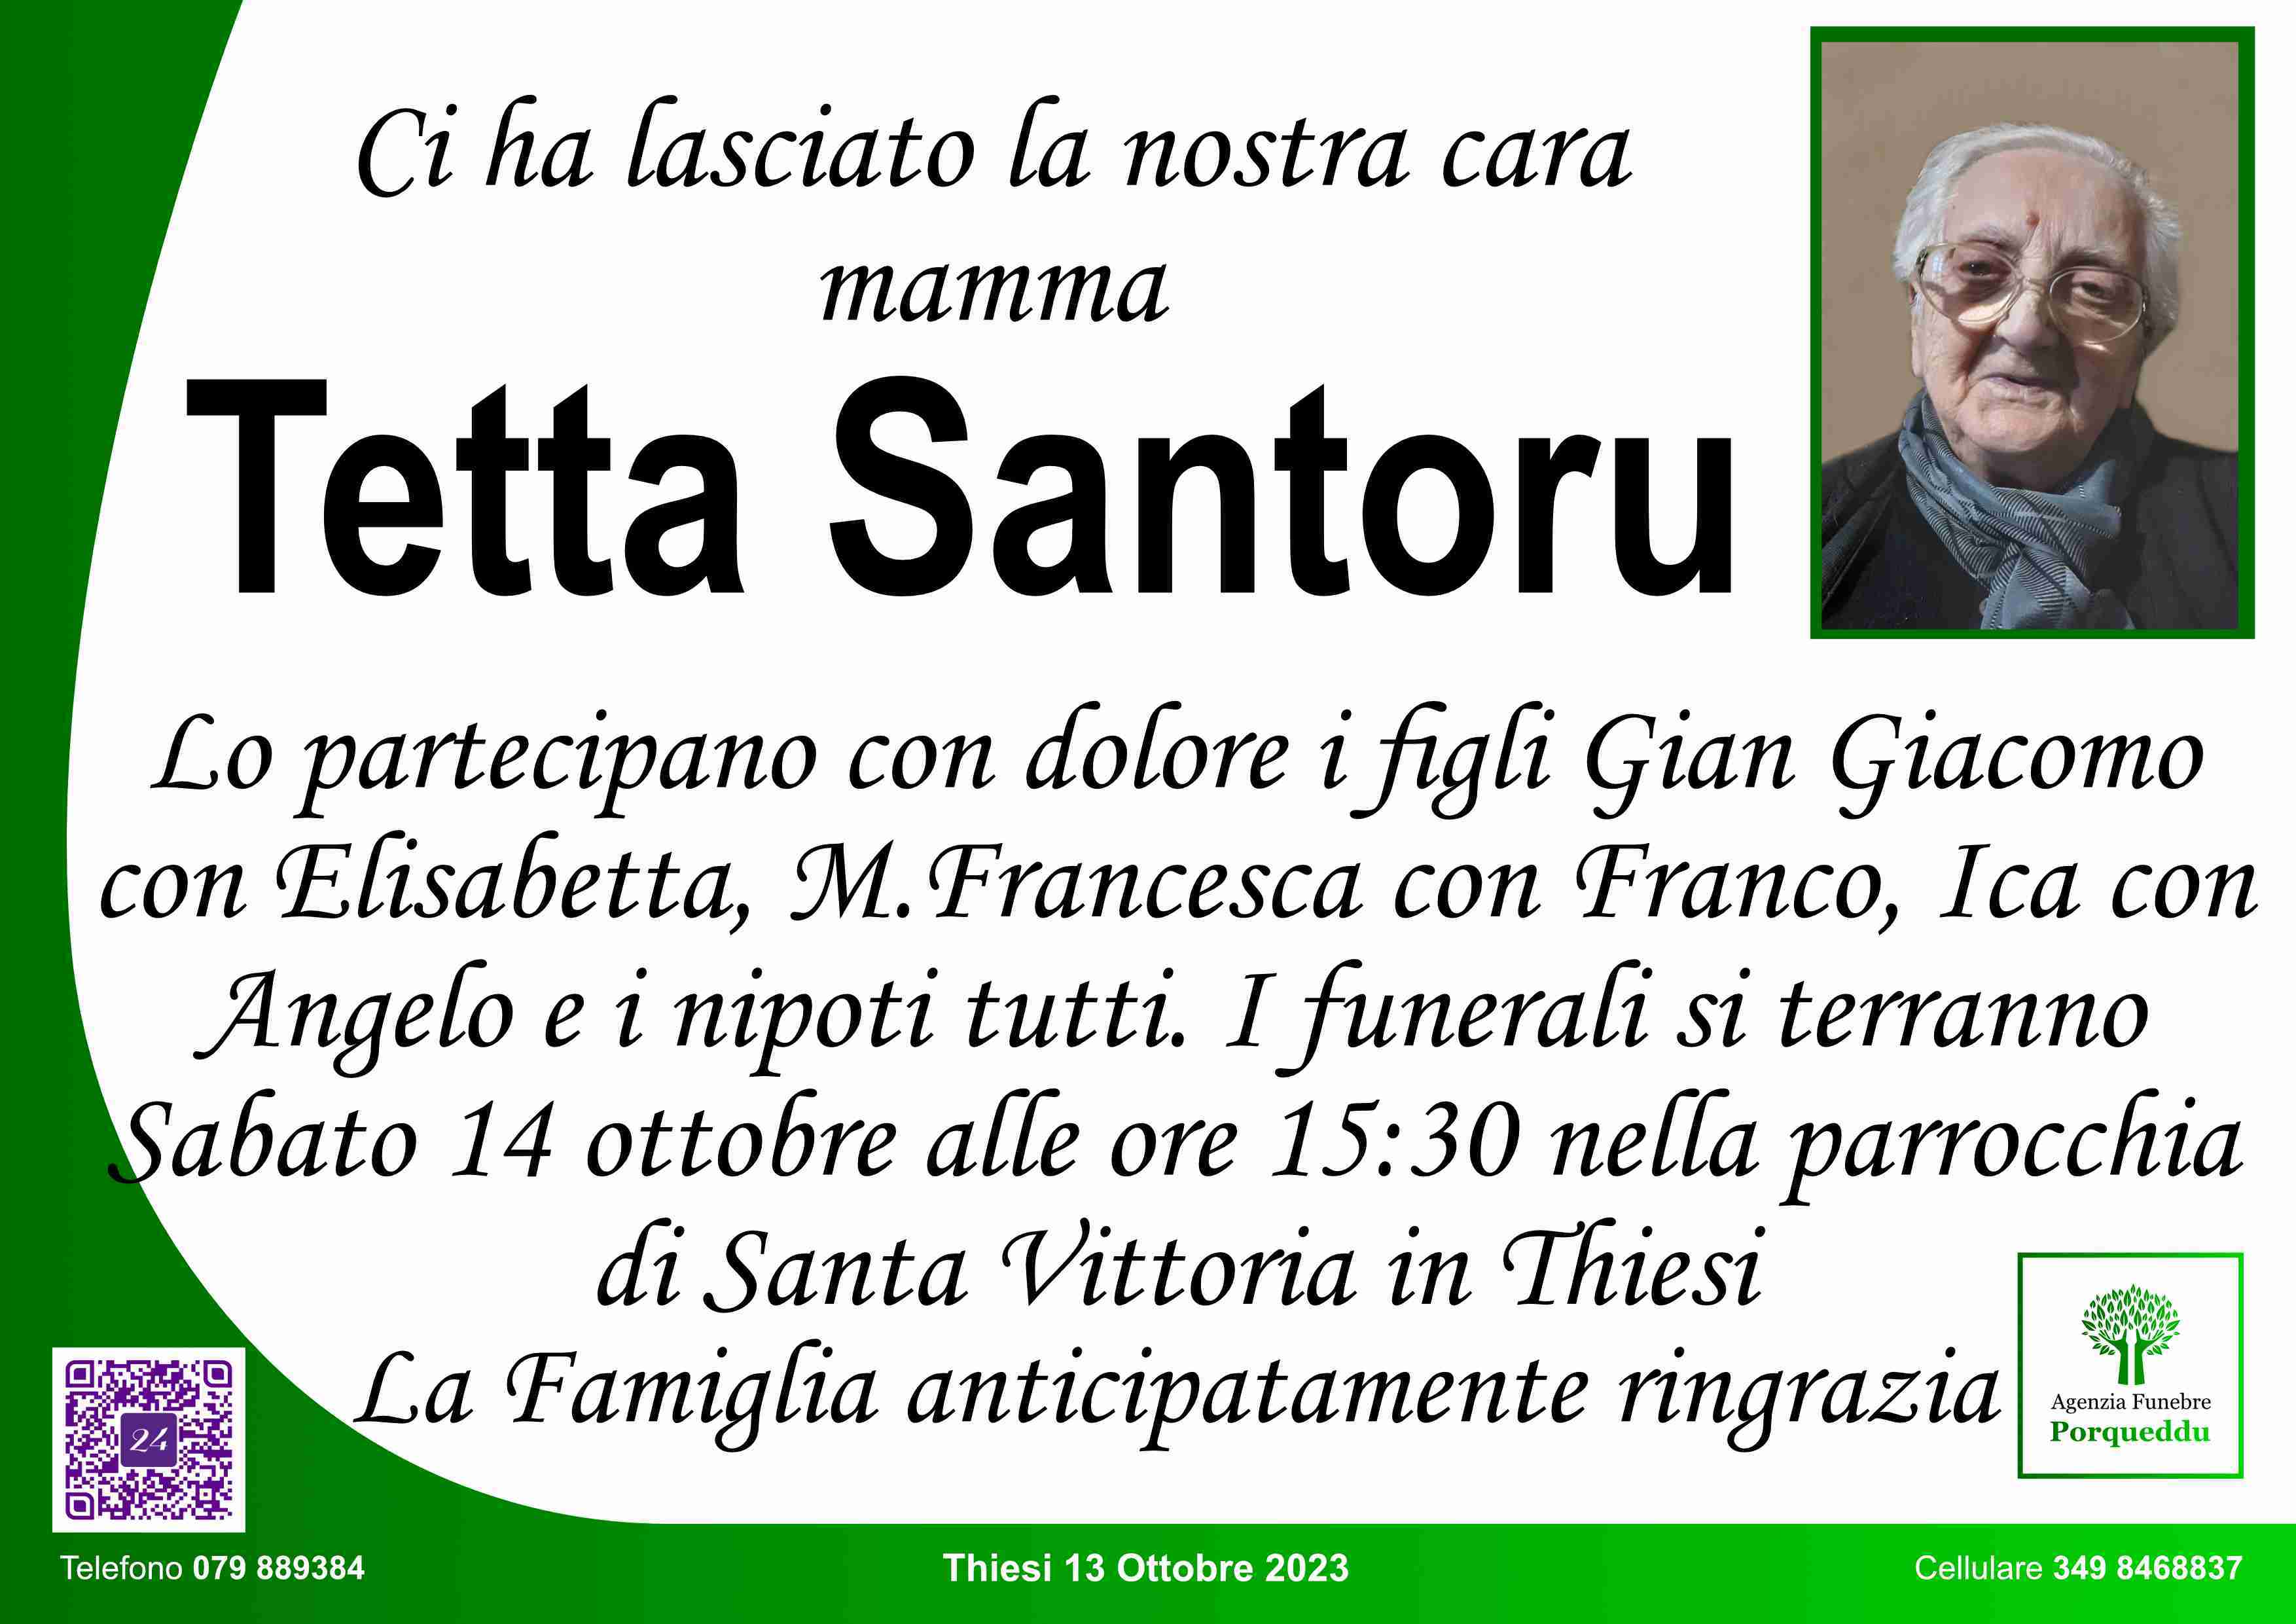 Antonietta Santoru